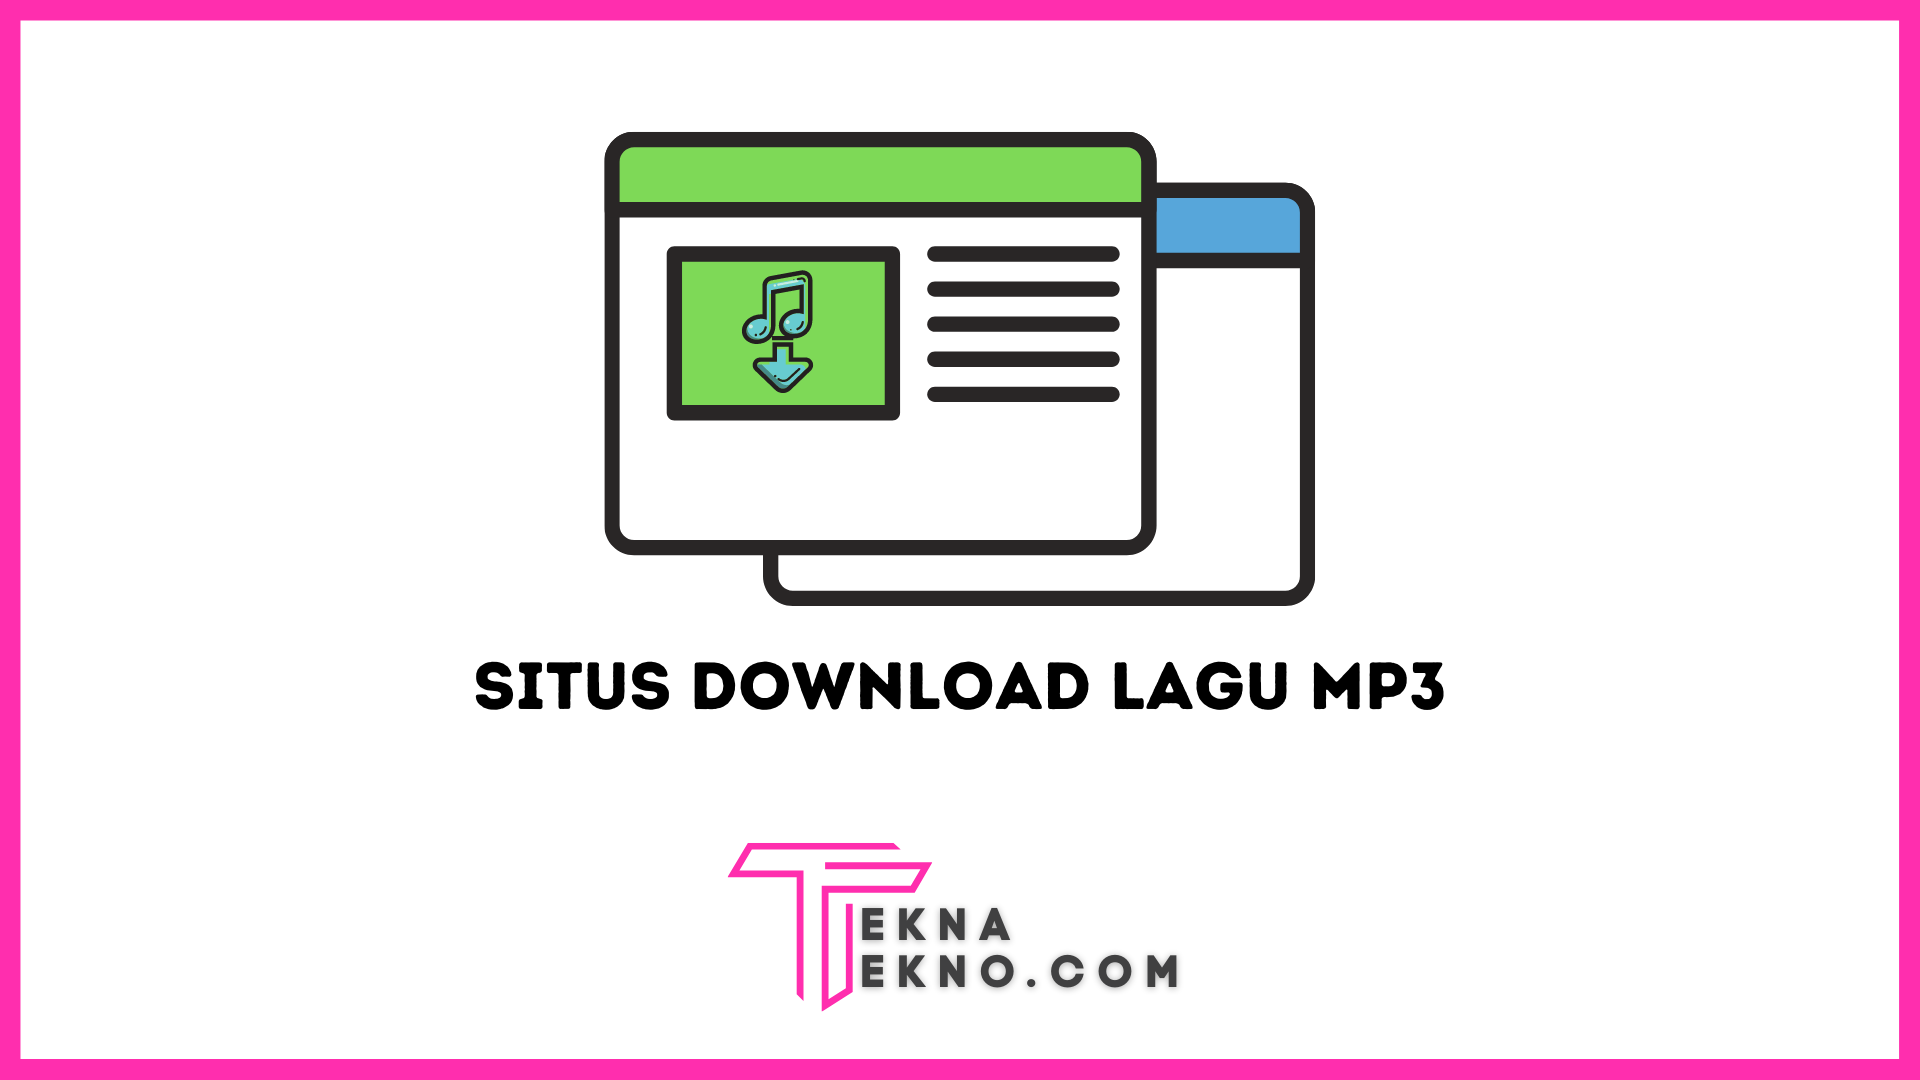 10 Situs Download Lagu MP3 yang Legal dan Gratis